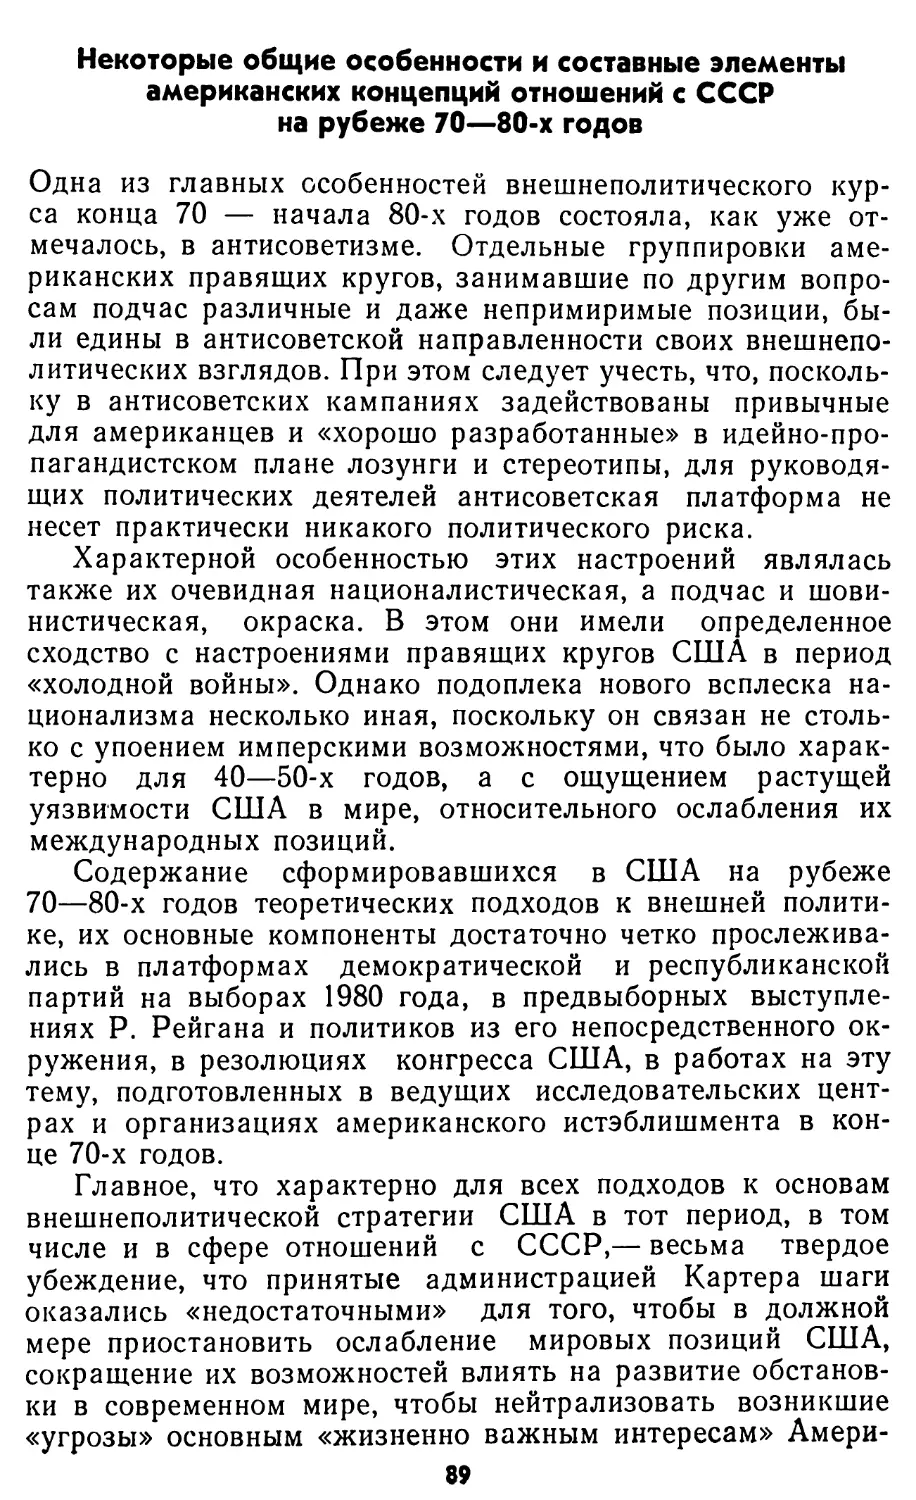 Некоторые общие особенности и составные элементы американских концепций отношений с СССР на рубеже 70—80-х годов